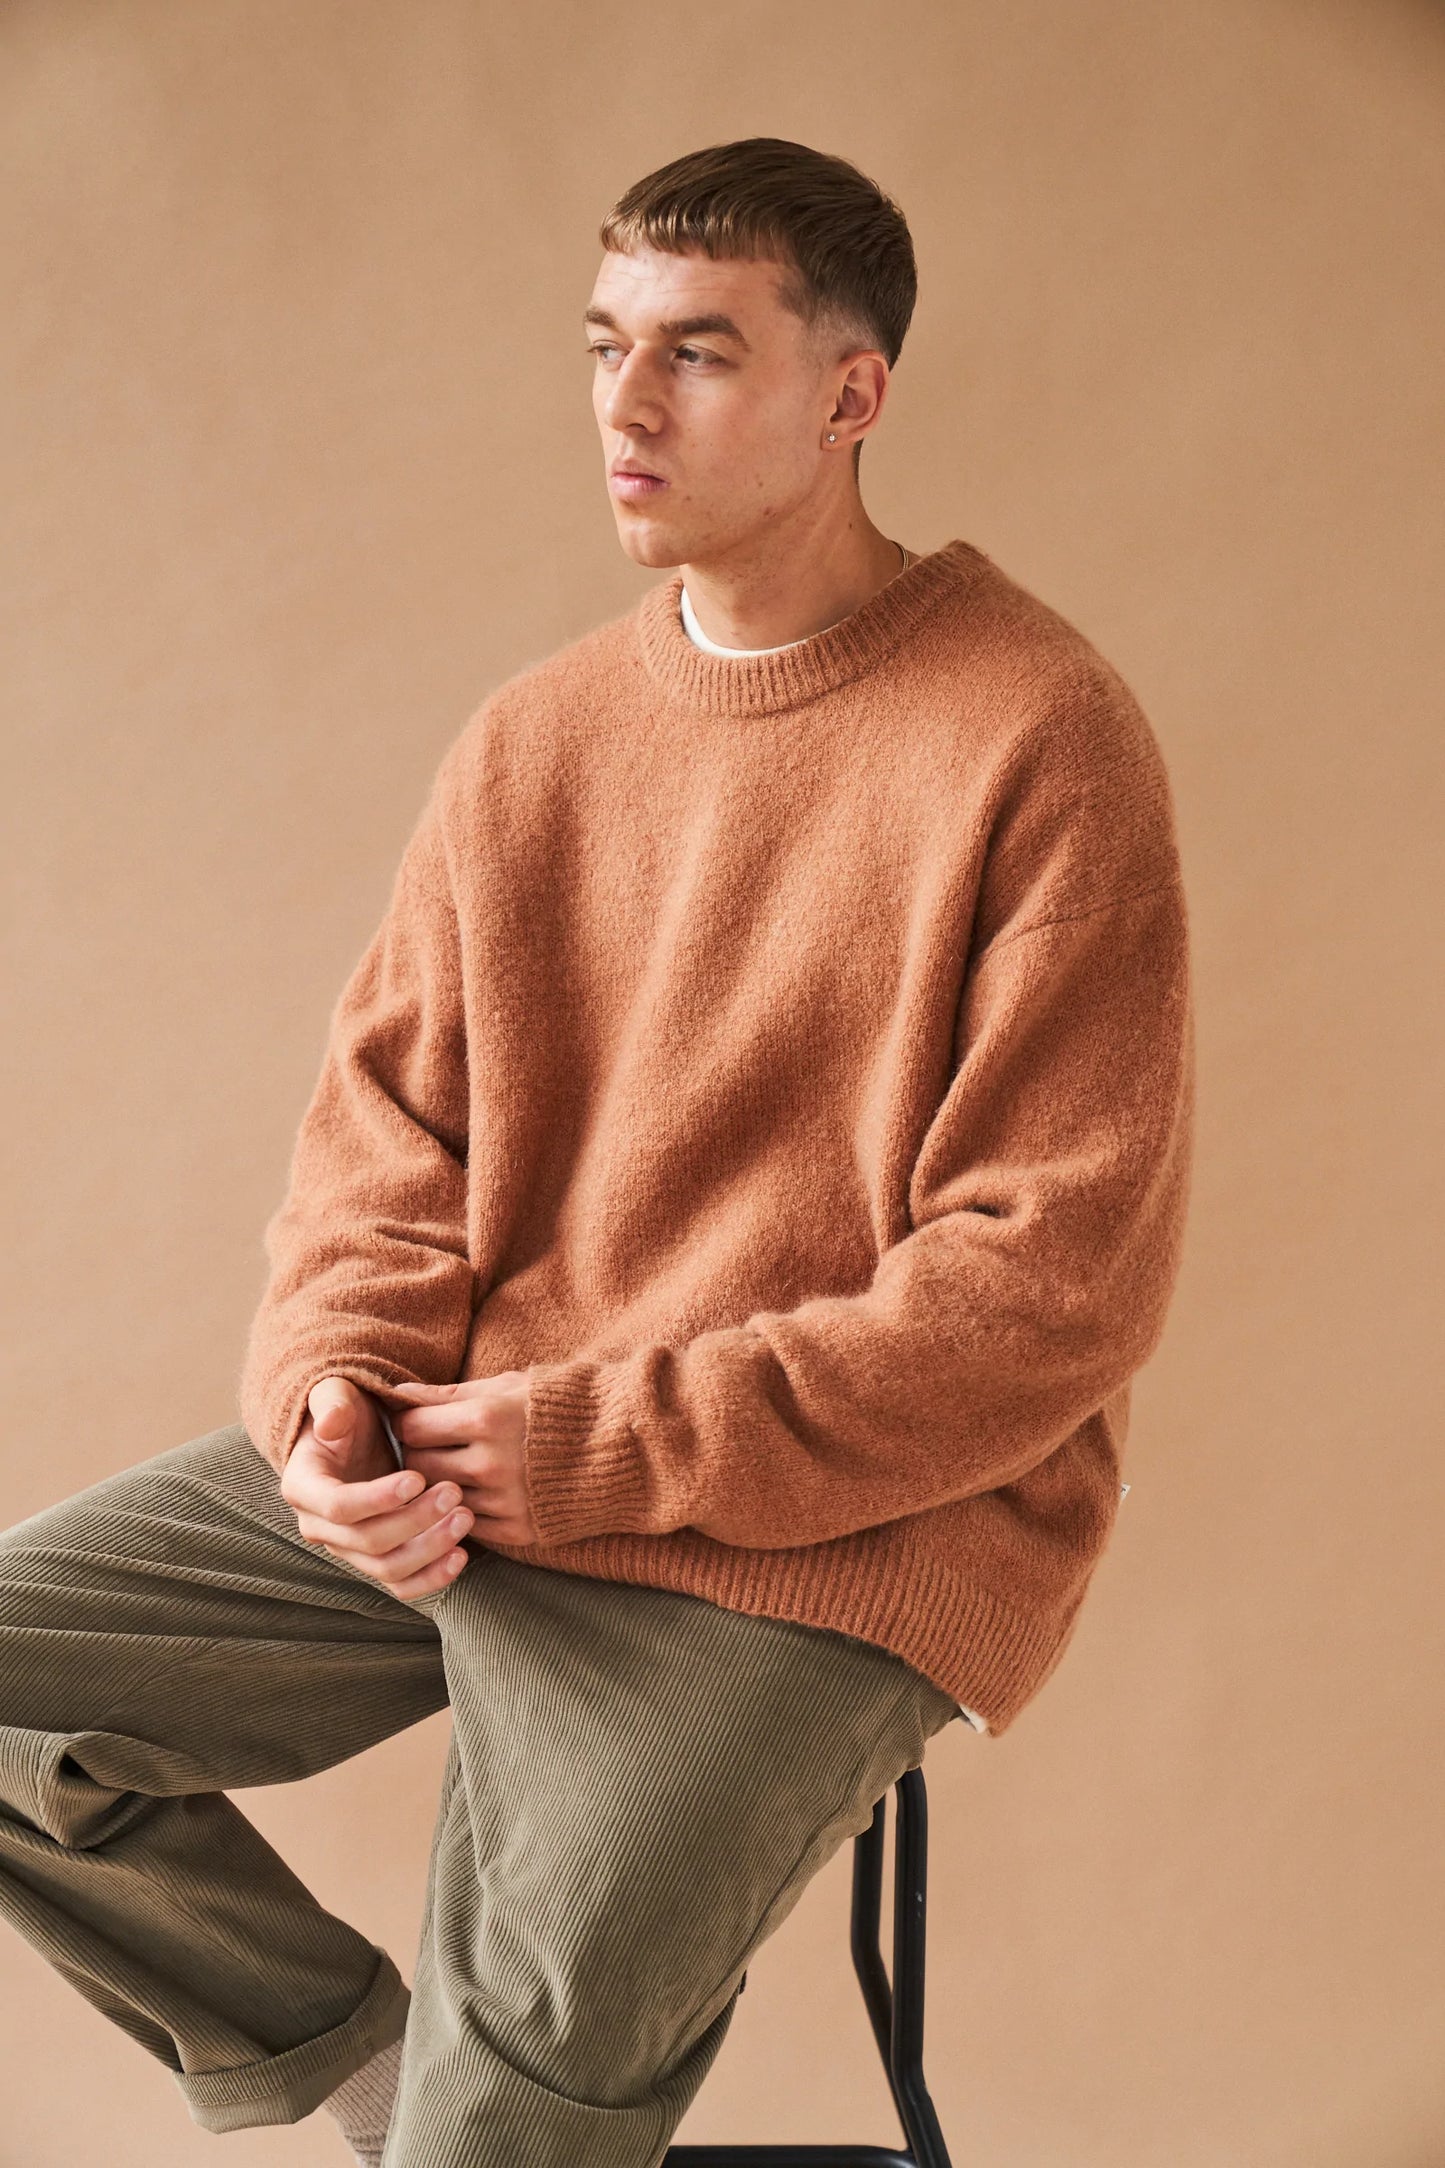 bound 'Baxter' Mohair Blend Sweater - Rust